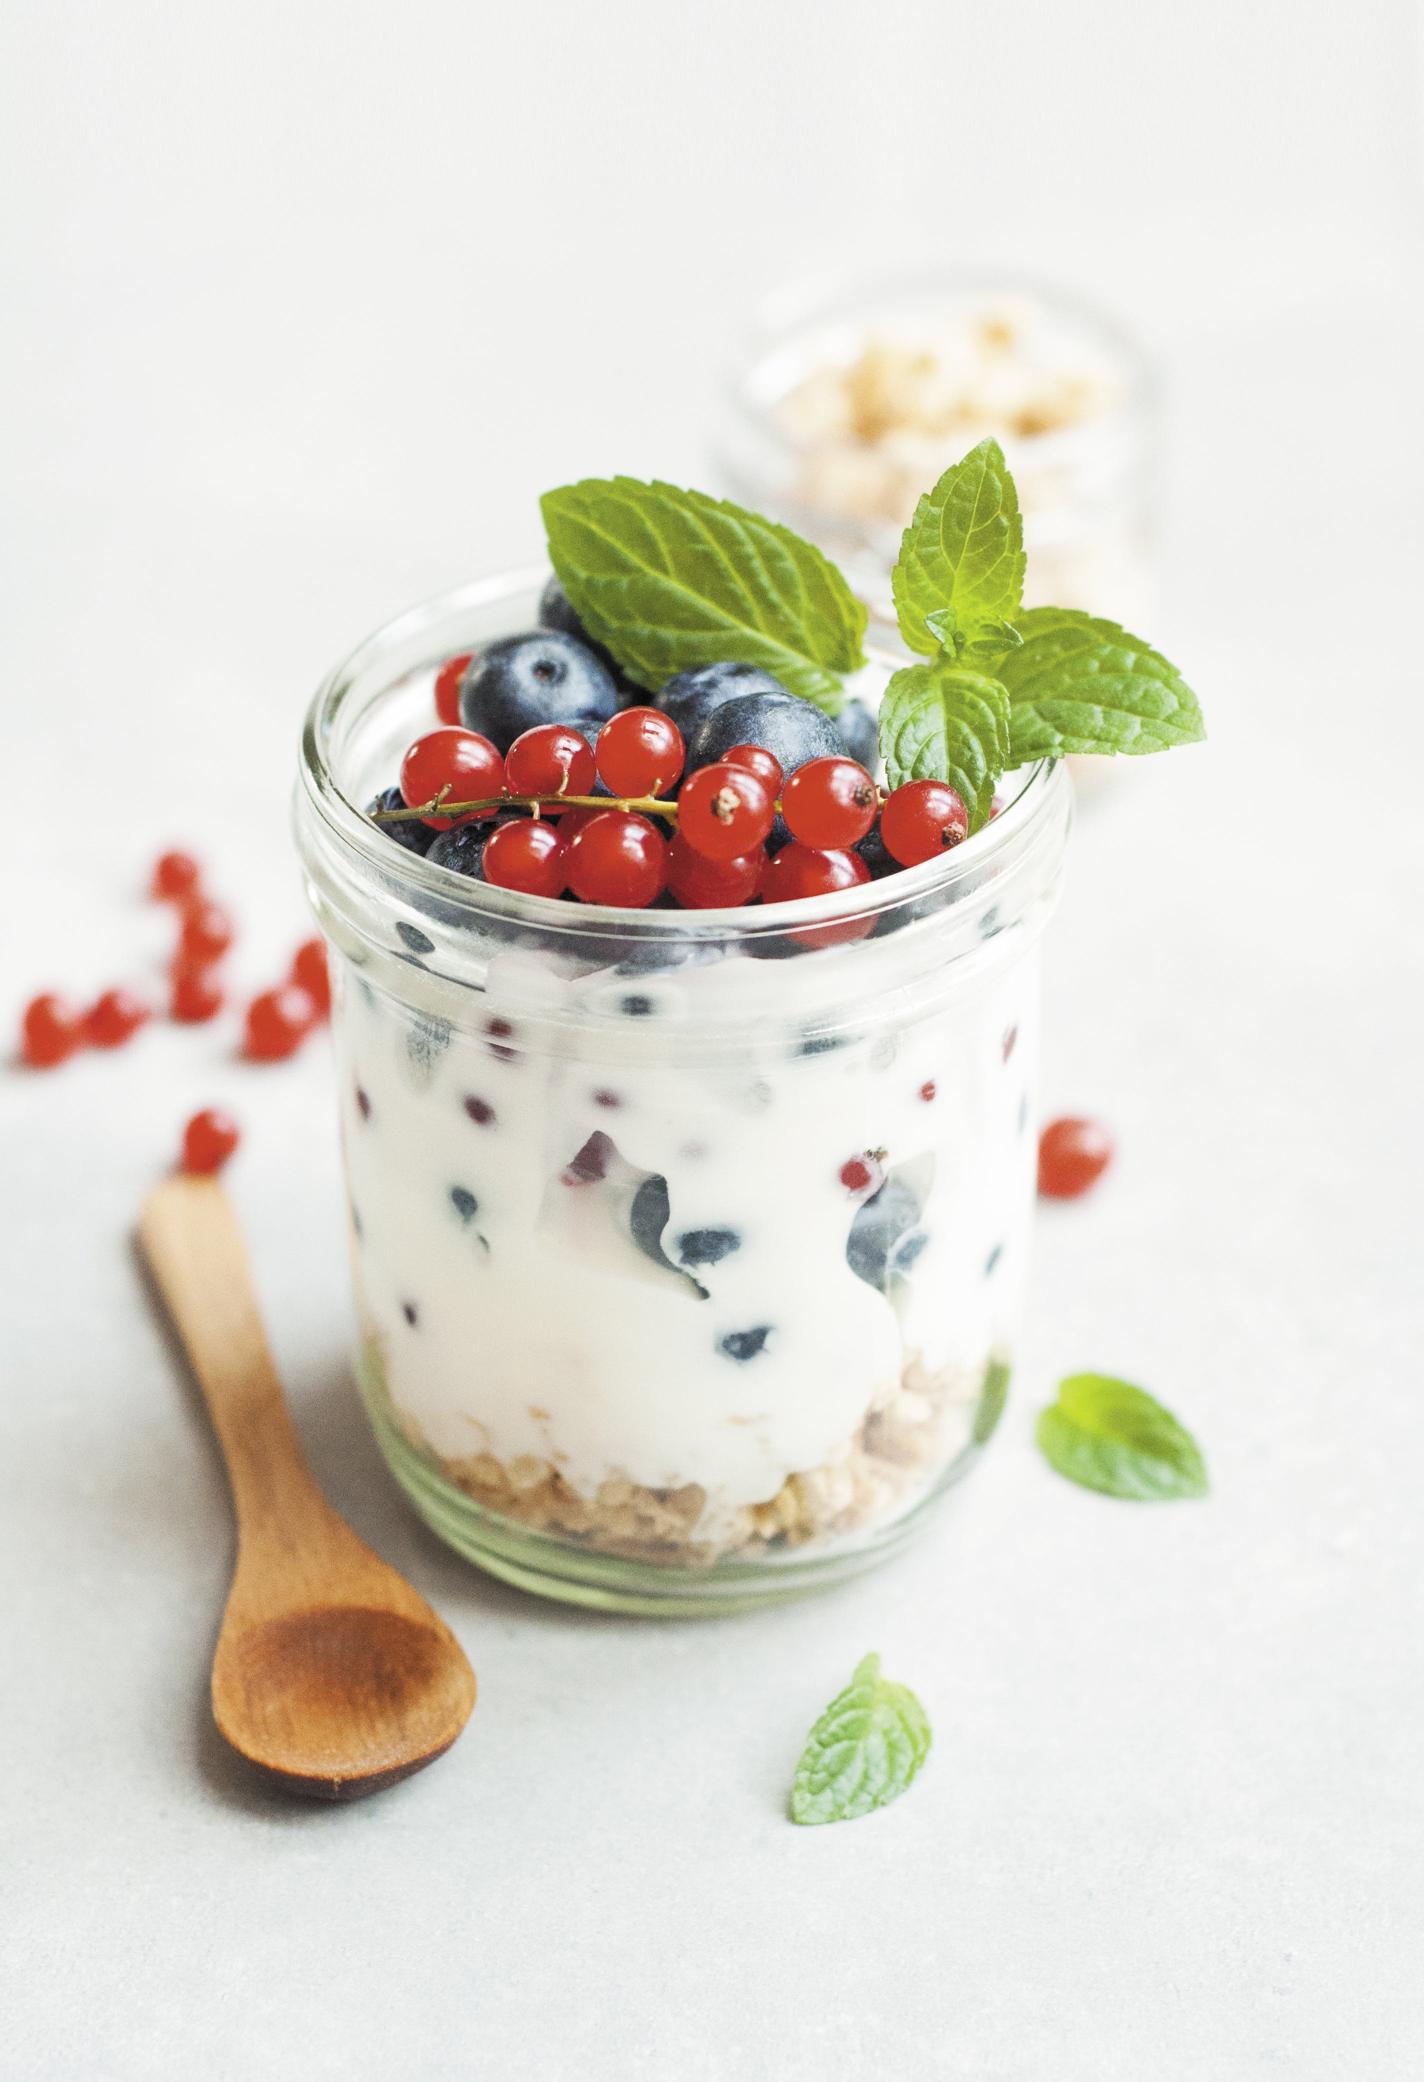 L'importanza dello yogurt nella dieta dei bambini